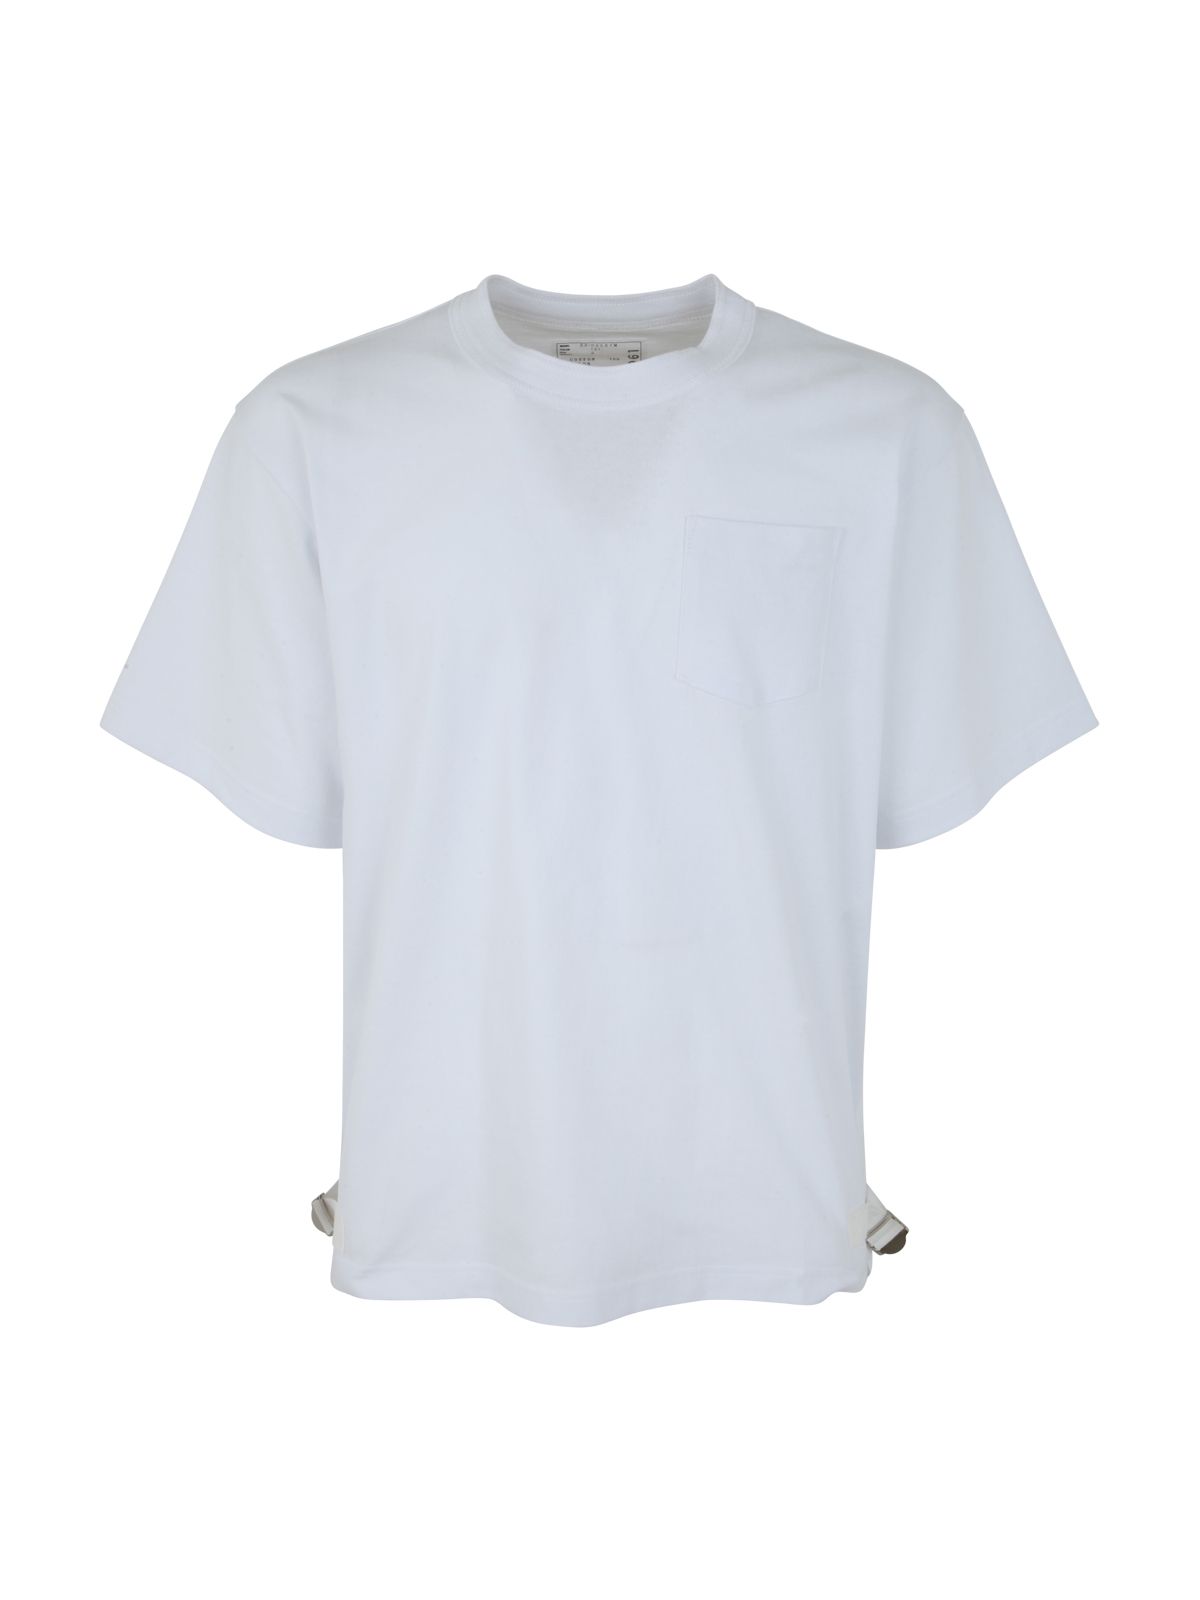 Shop Sacai Men's Cotton T-shirt